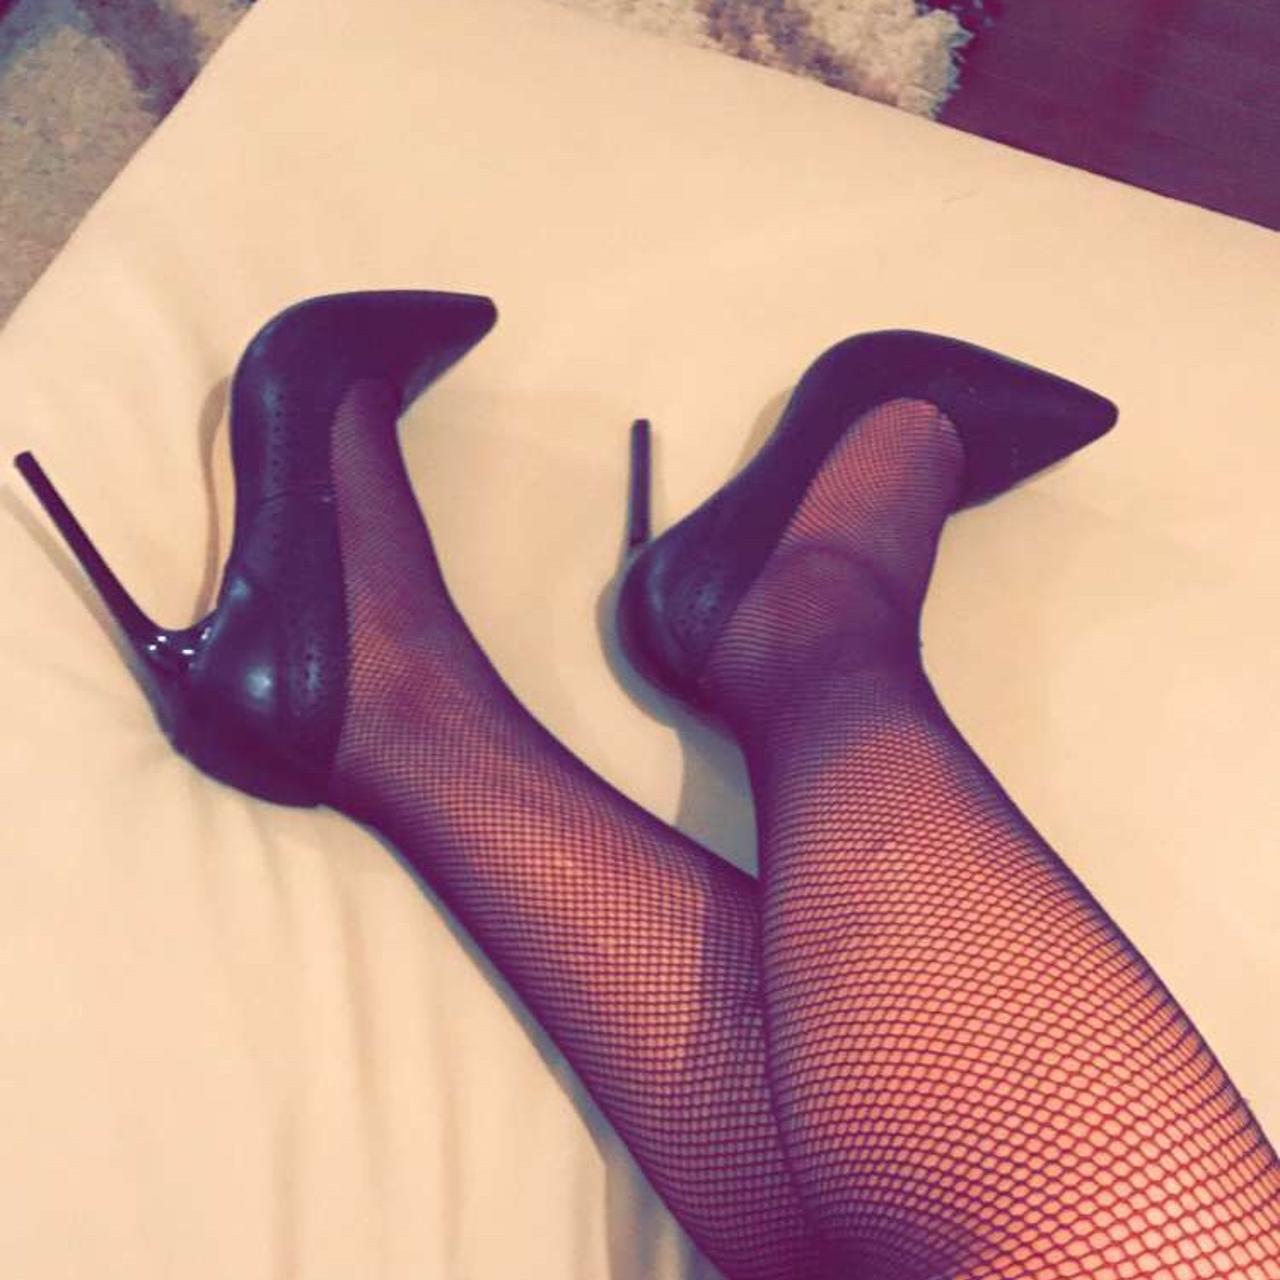 Sexy Ass Heels